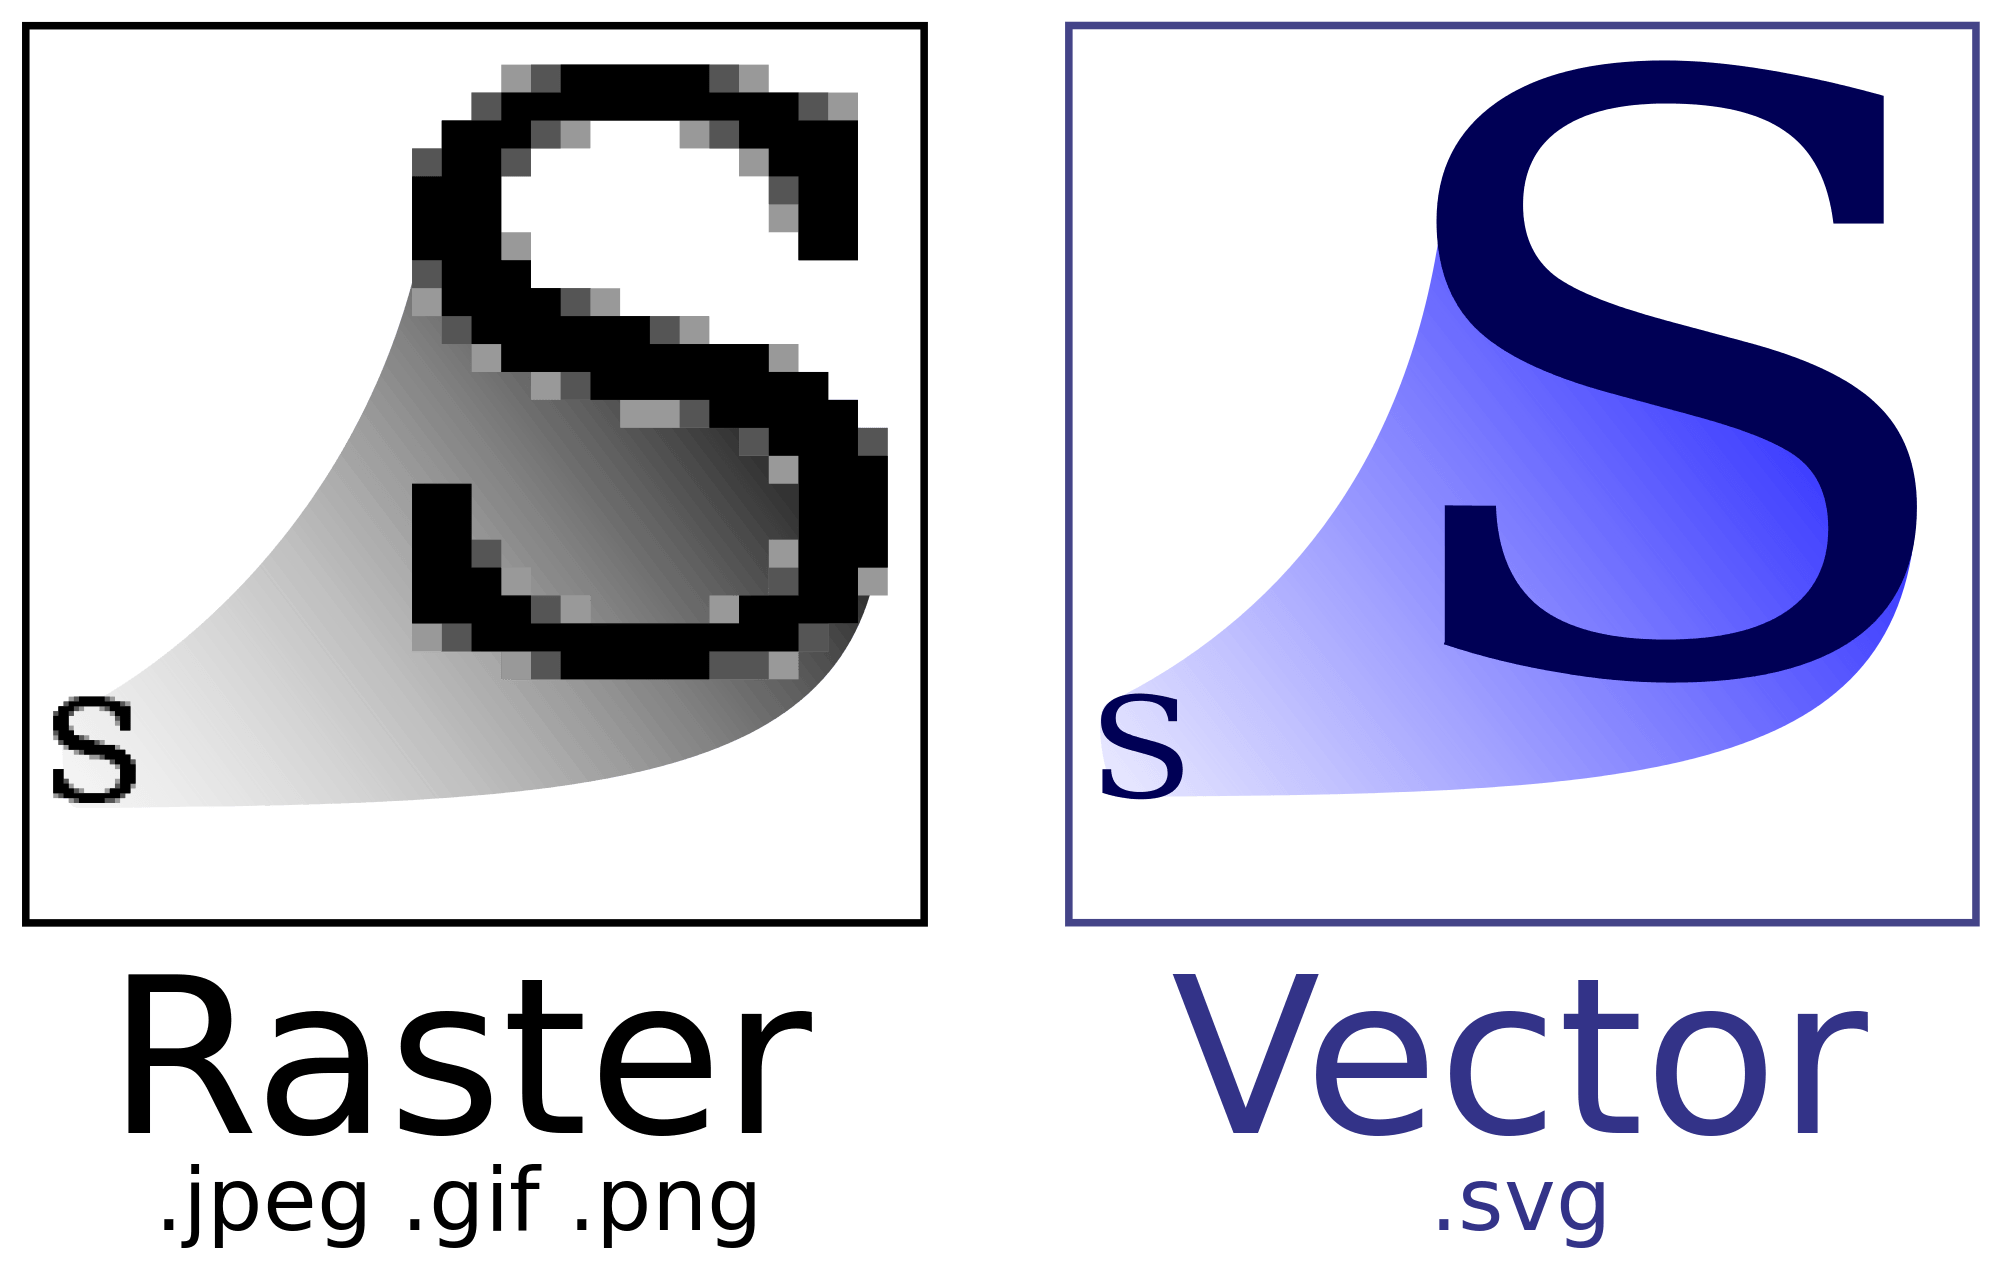 Raster Logo - Vector vs. Raster for Logo Design